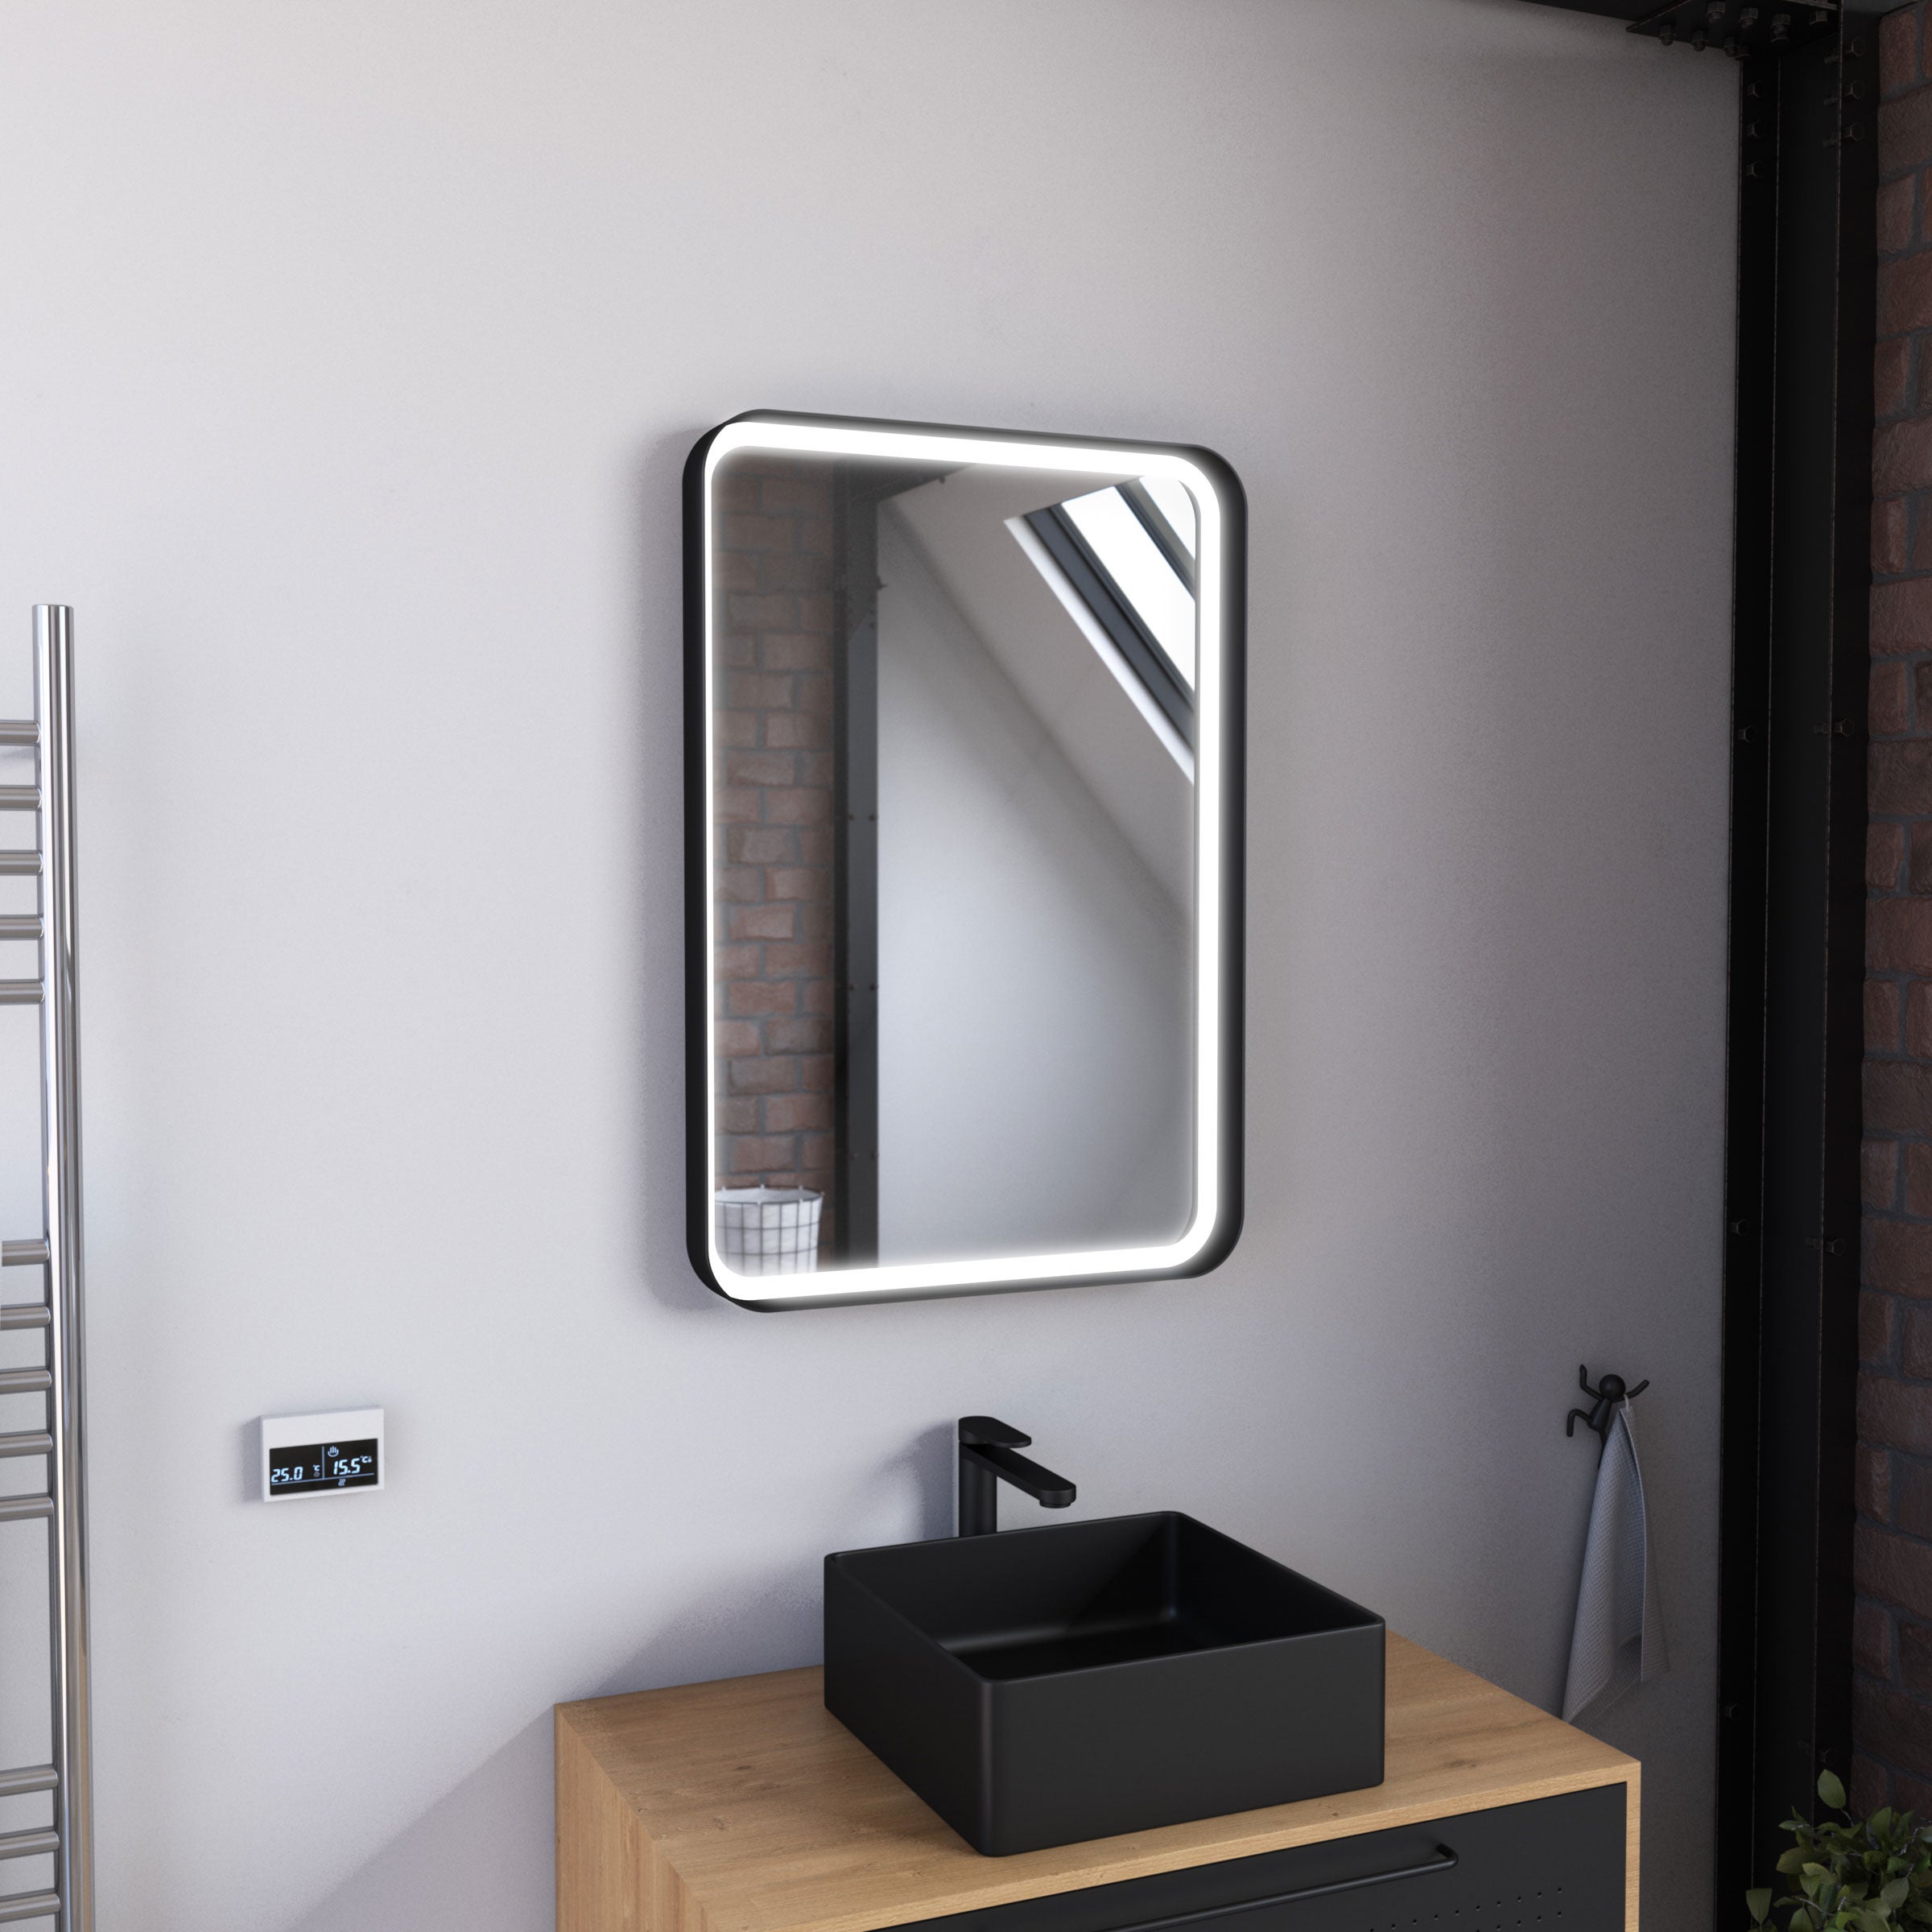 Miroir salle de bain avec eclairage LED - 50x70cm - GO LED - Aurlane